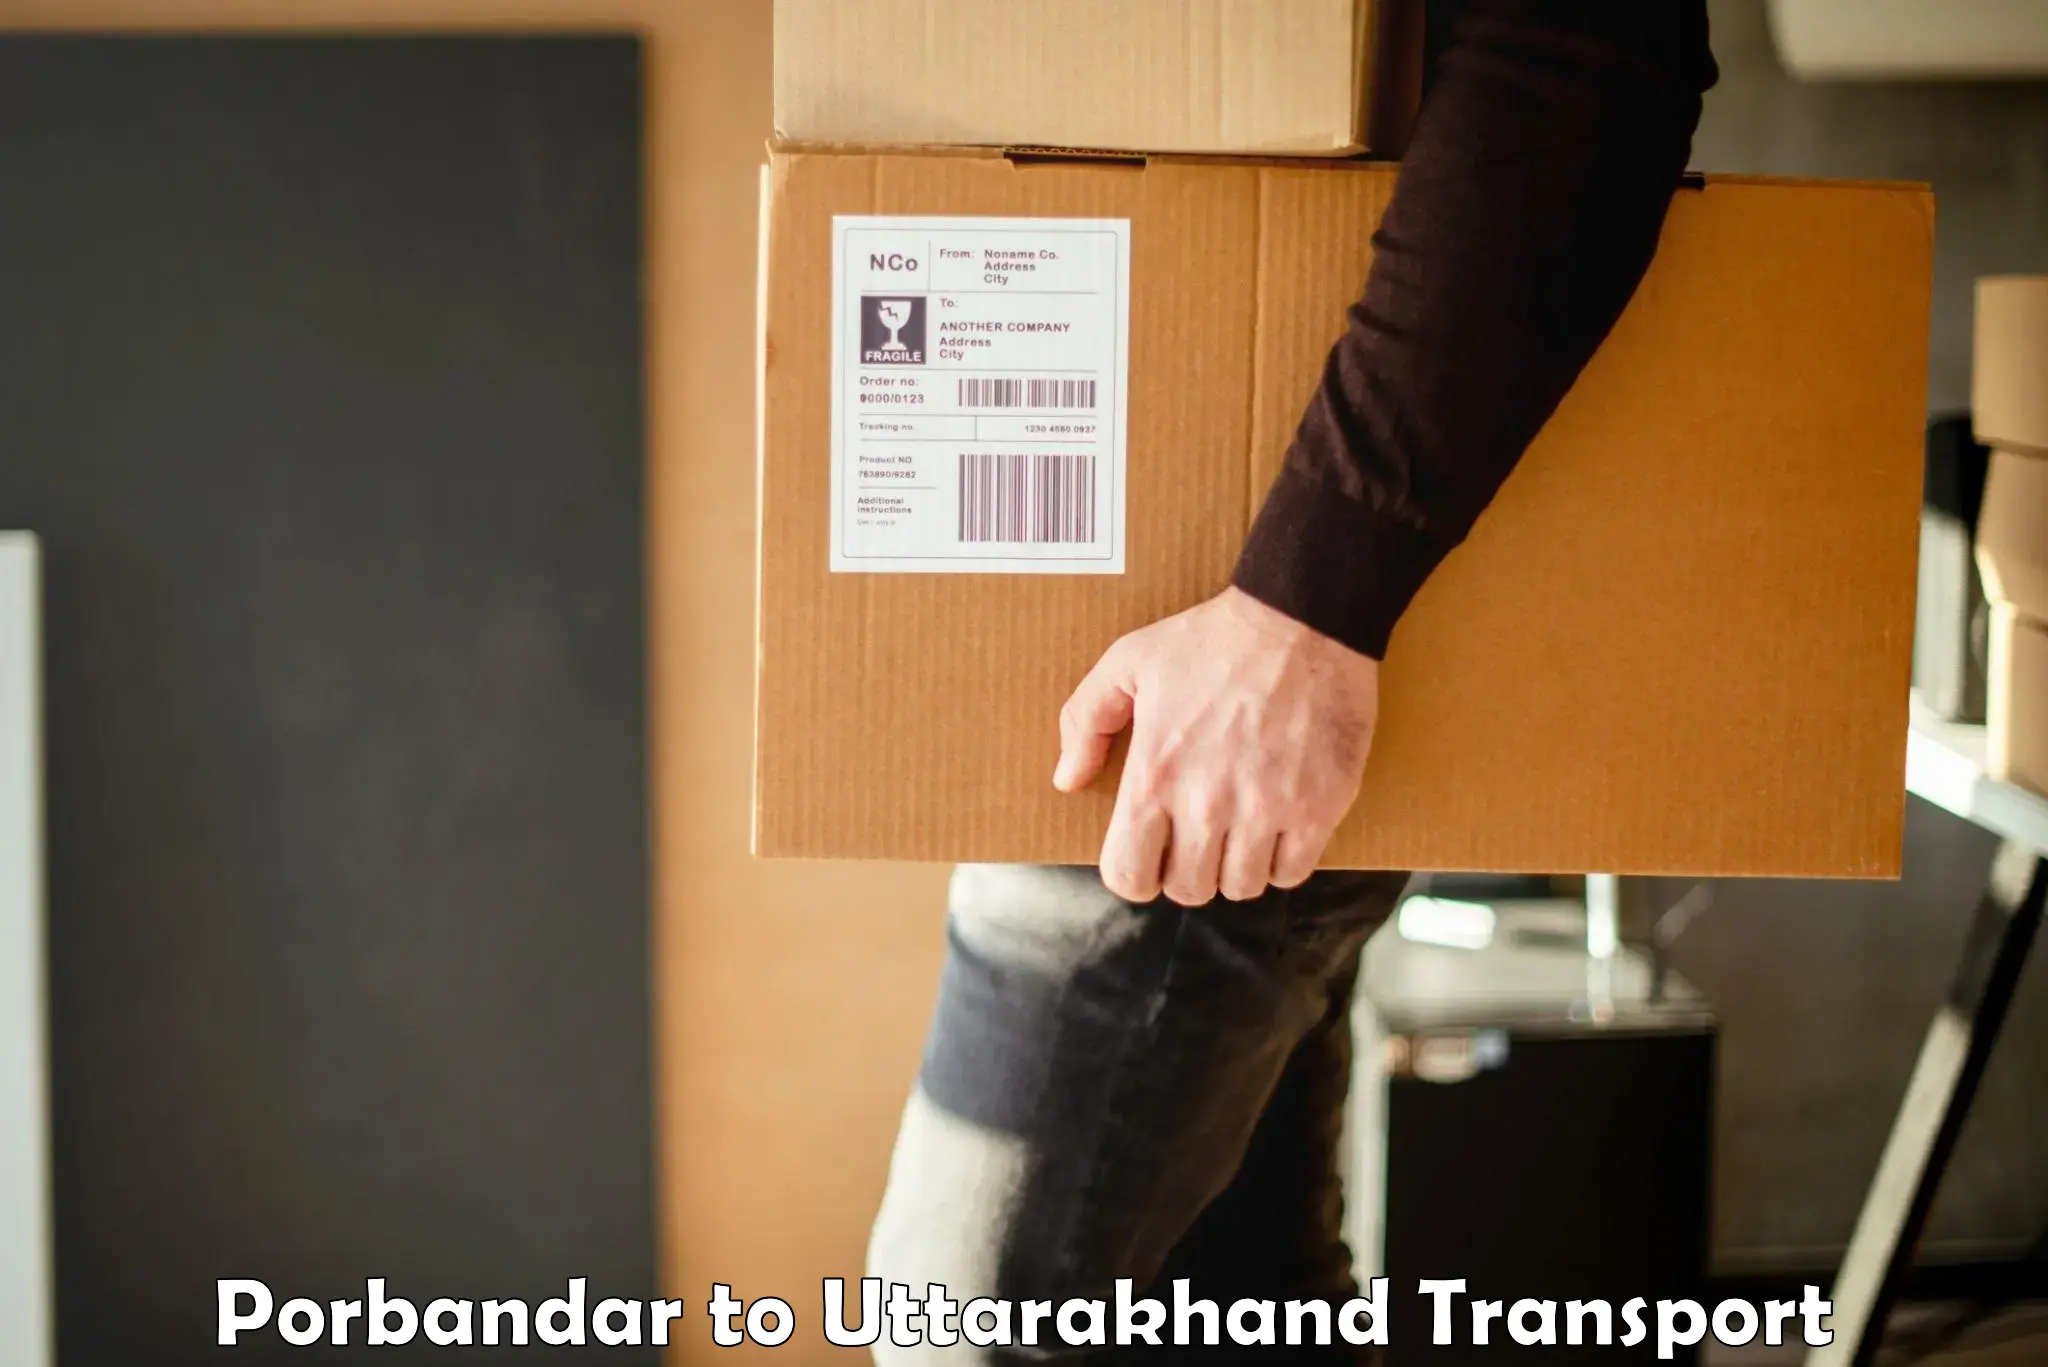 Commercial transport service Porbandar to Uttarkashi